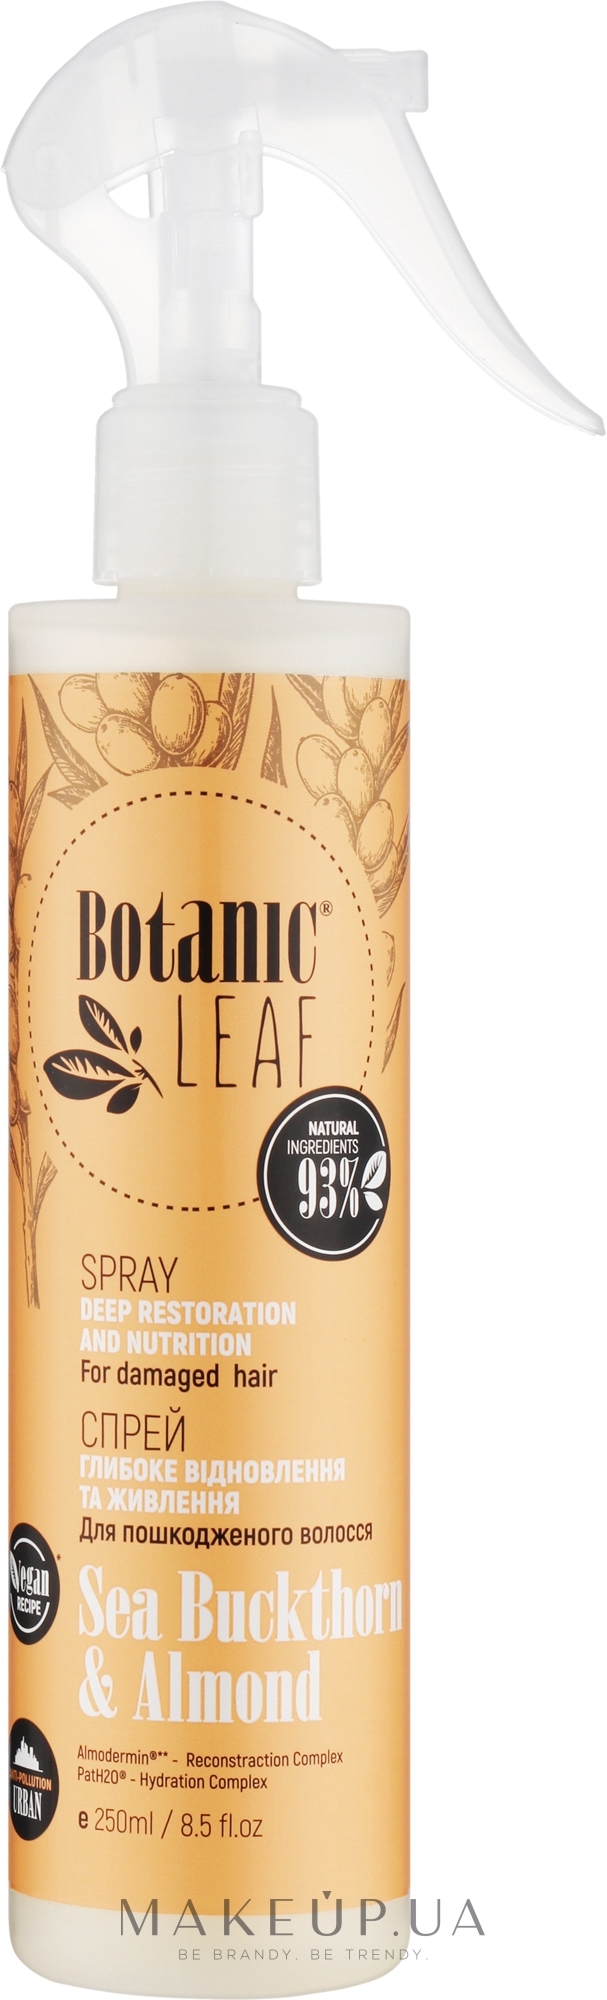 Спрей для пошкодженого і тьмяного волосся "Глибоке відновлення і живлення" - Botanic Leaf — фото 250ml